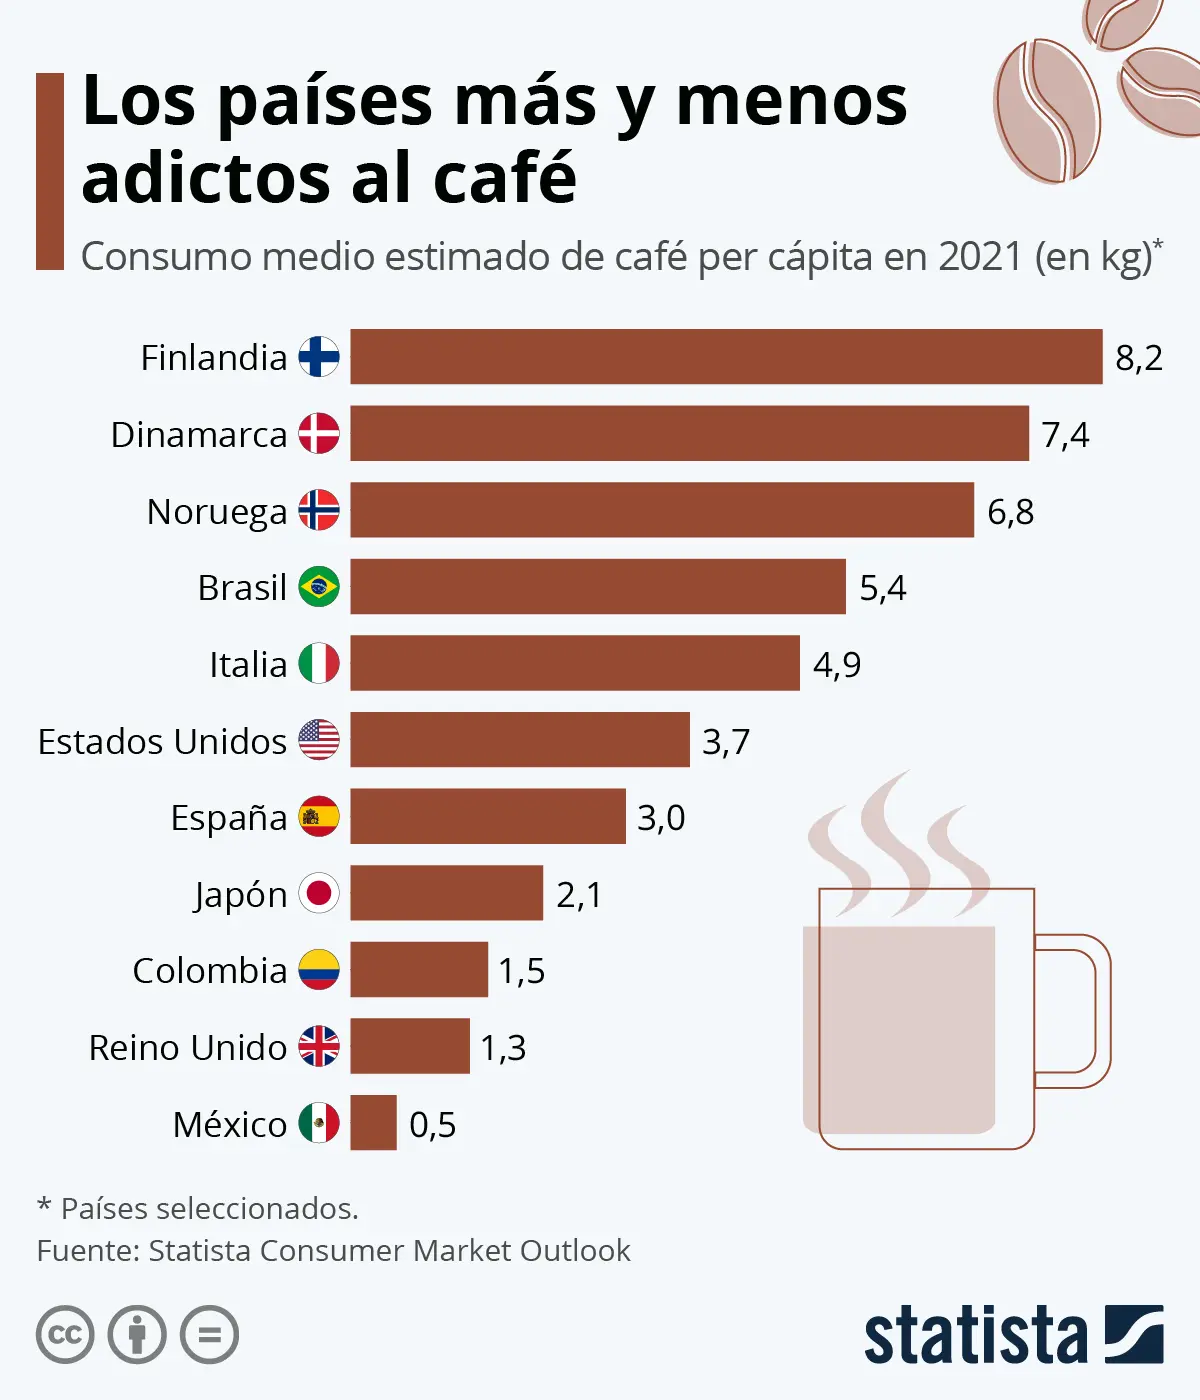 donde se toma el cafe - Cuál es el país donde se consume más café